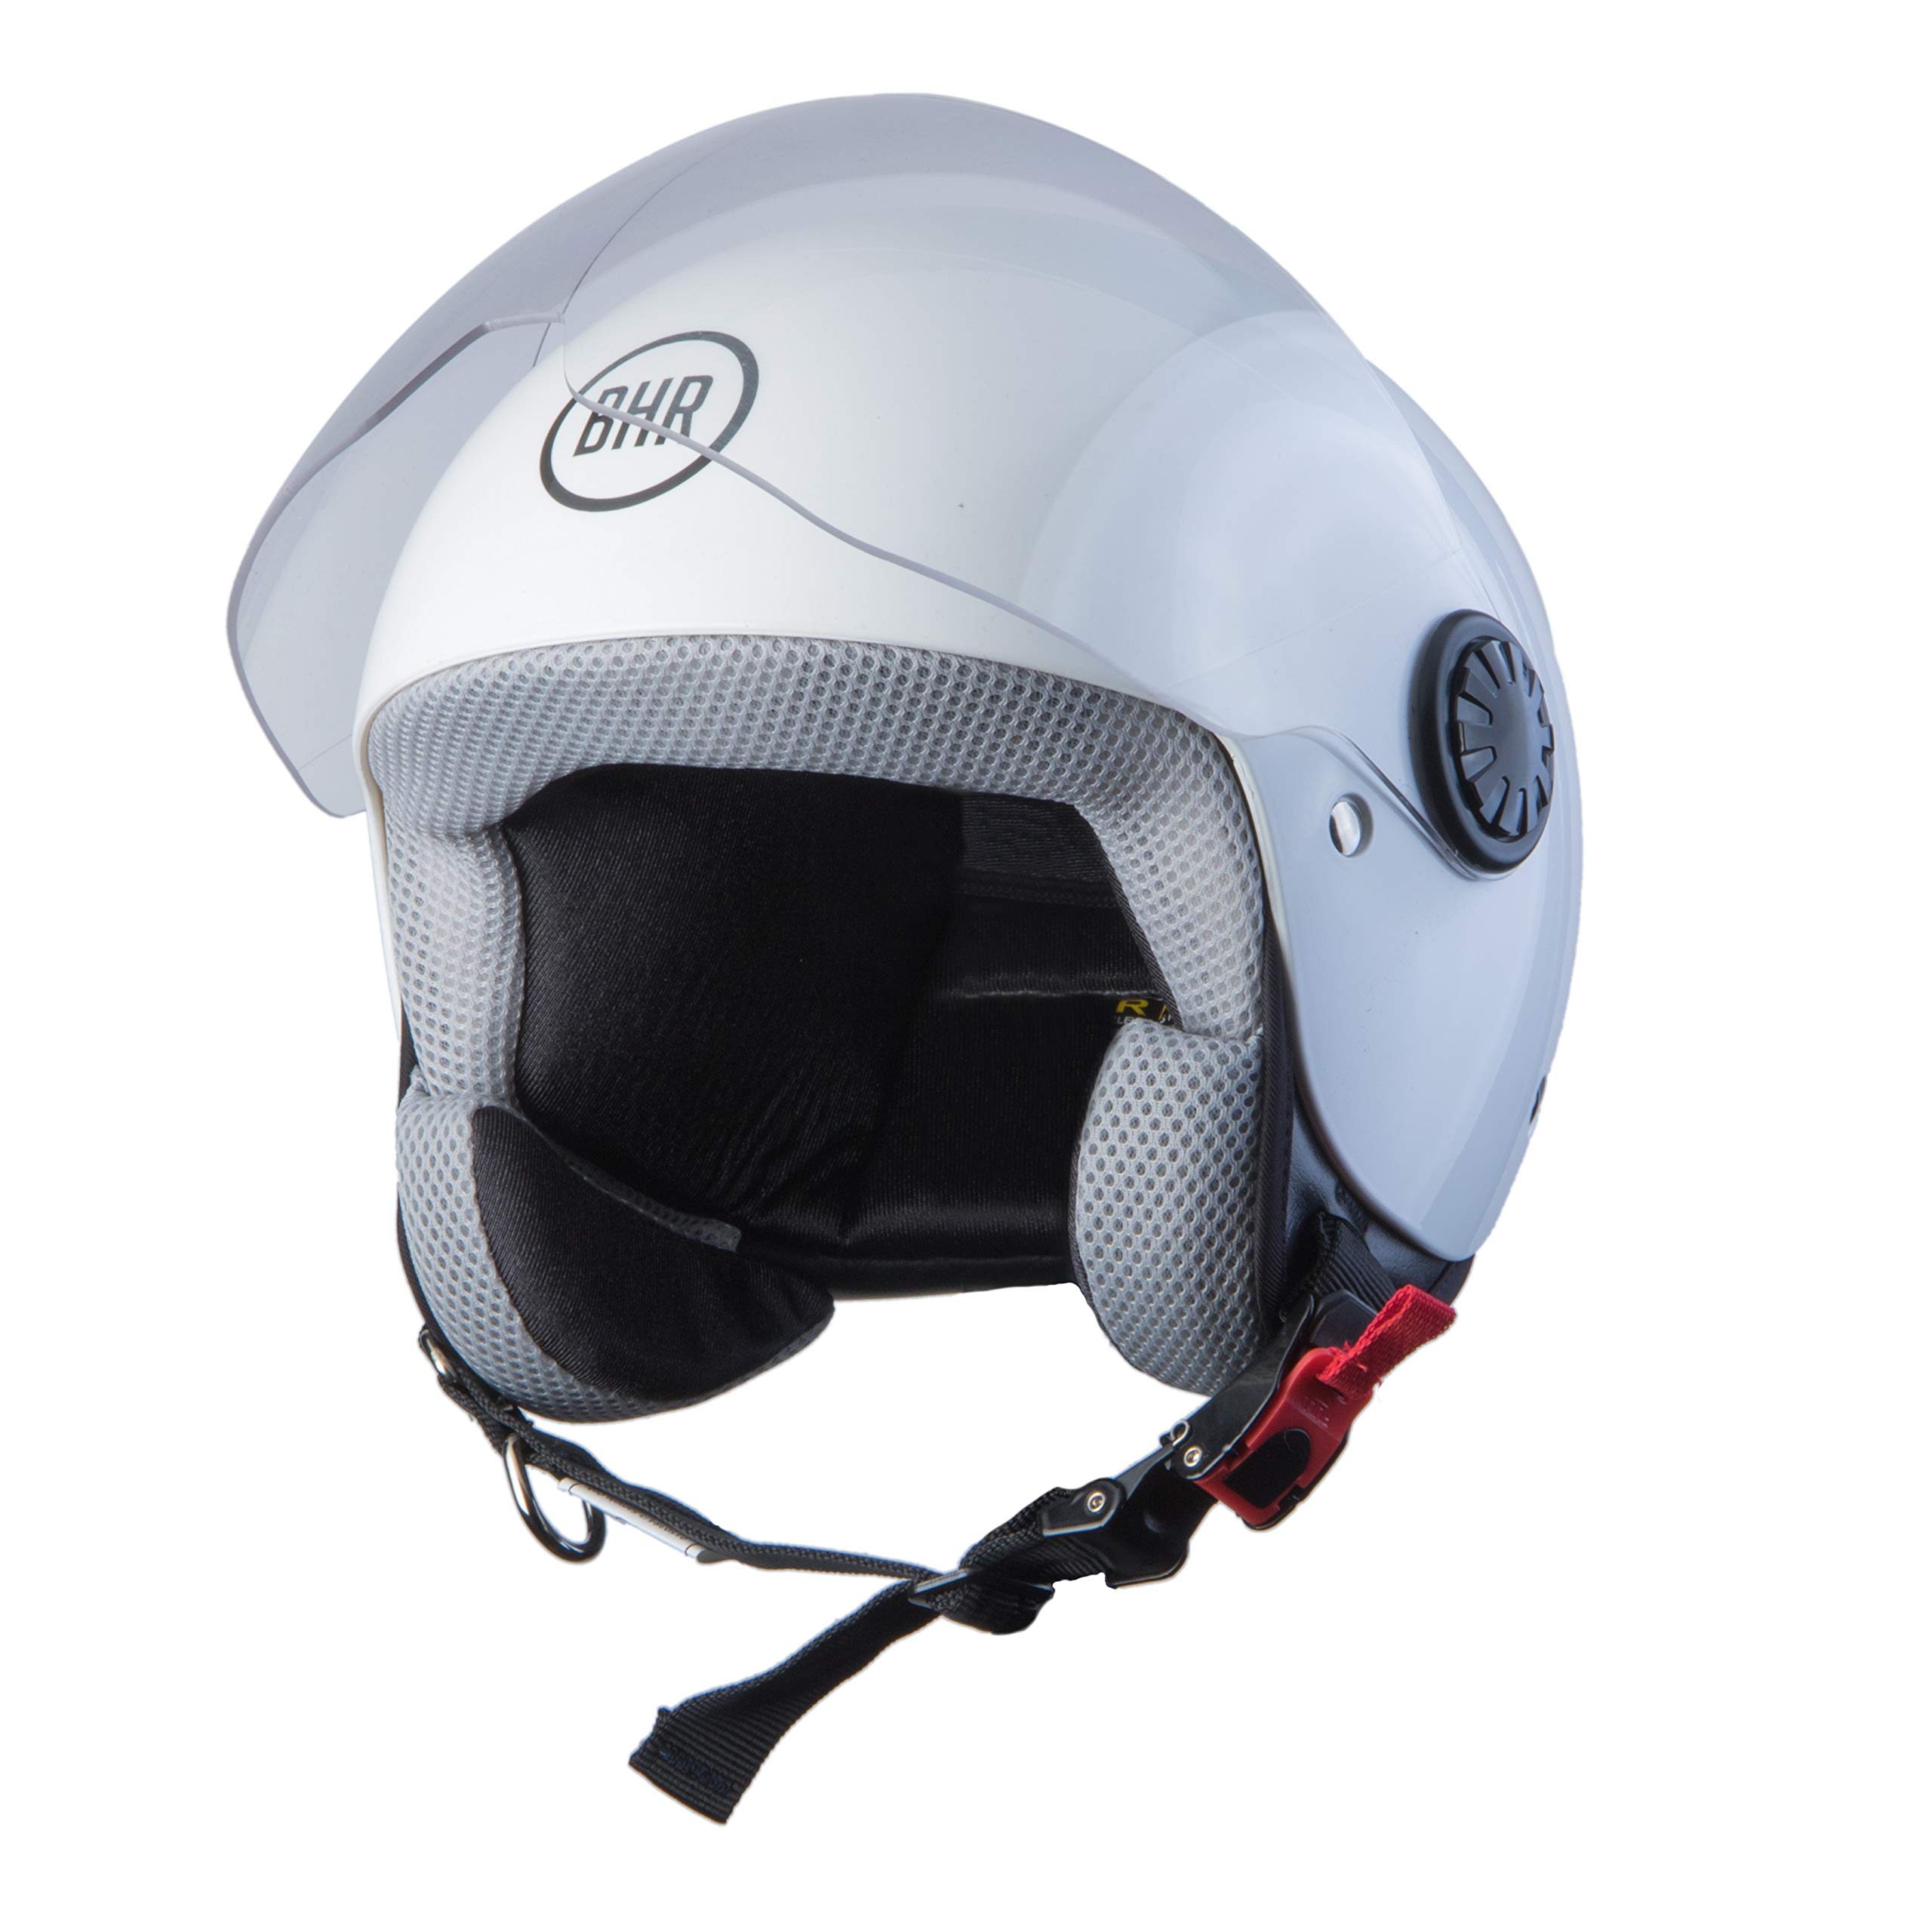 BHR Helmets 806 KID Motorradhelm Jugend Unisex, Weiss, L